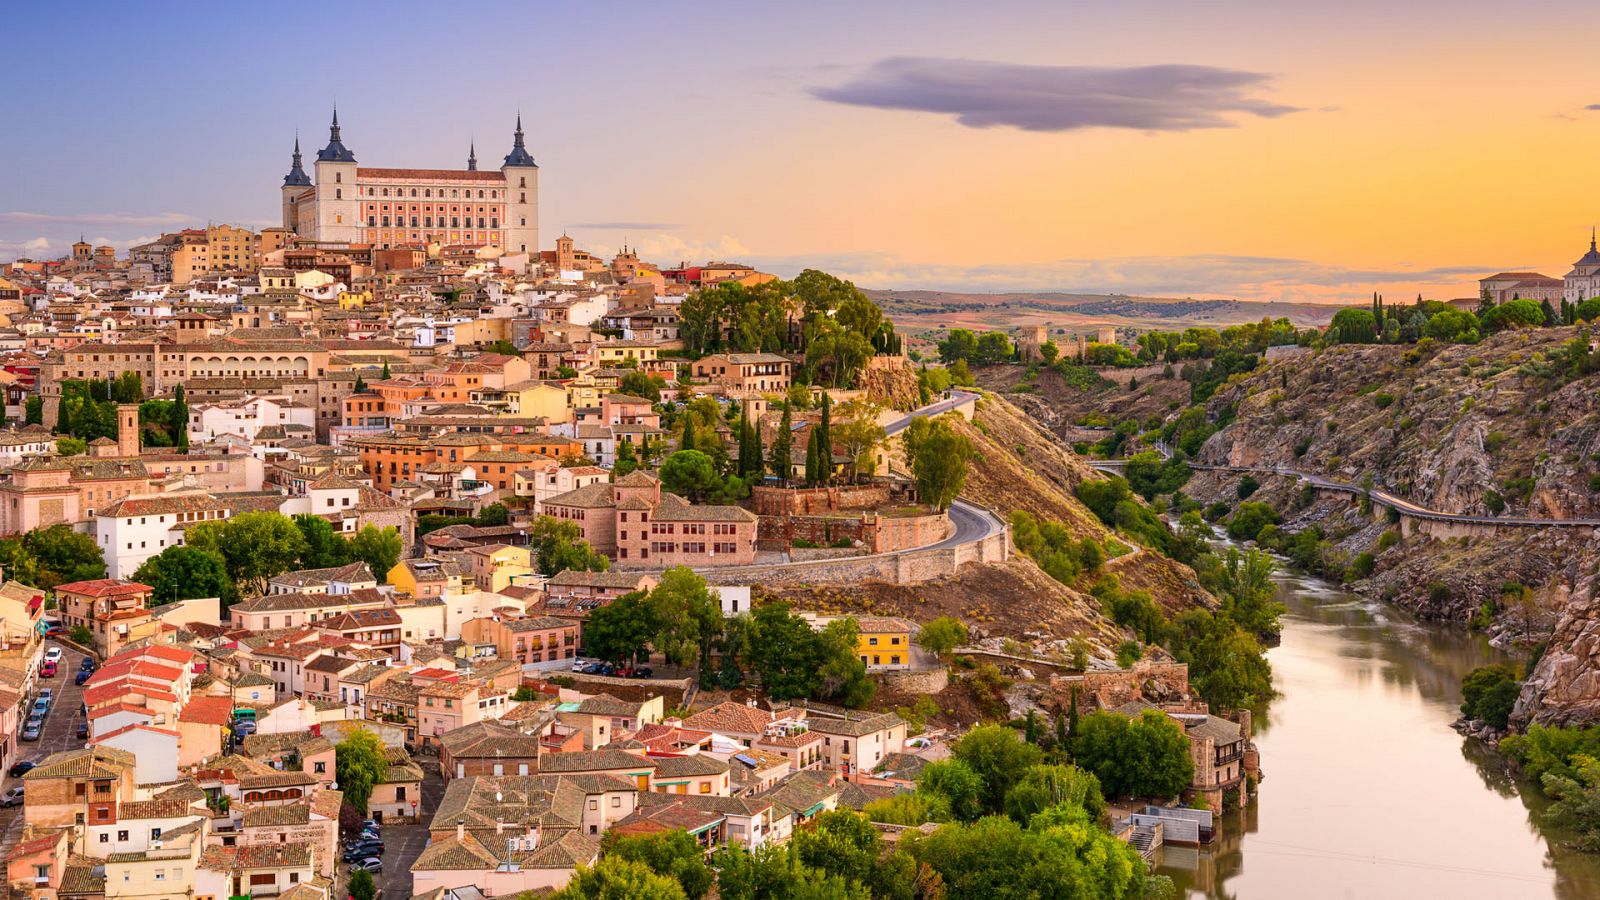 Ciudades para el Siglo XXI - Toledo, memoria en los muros